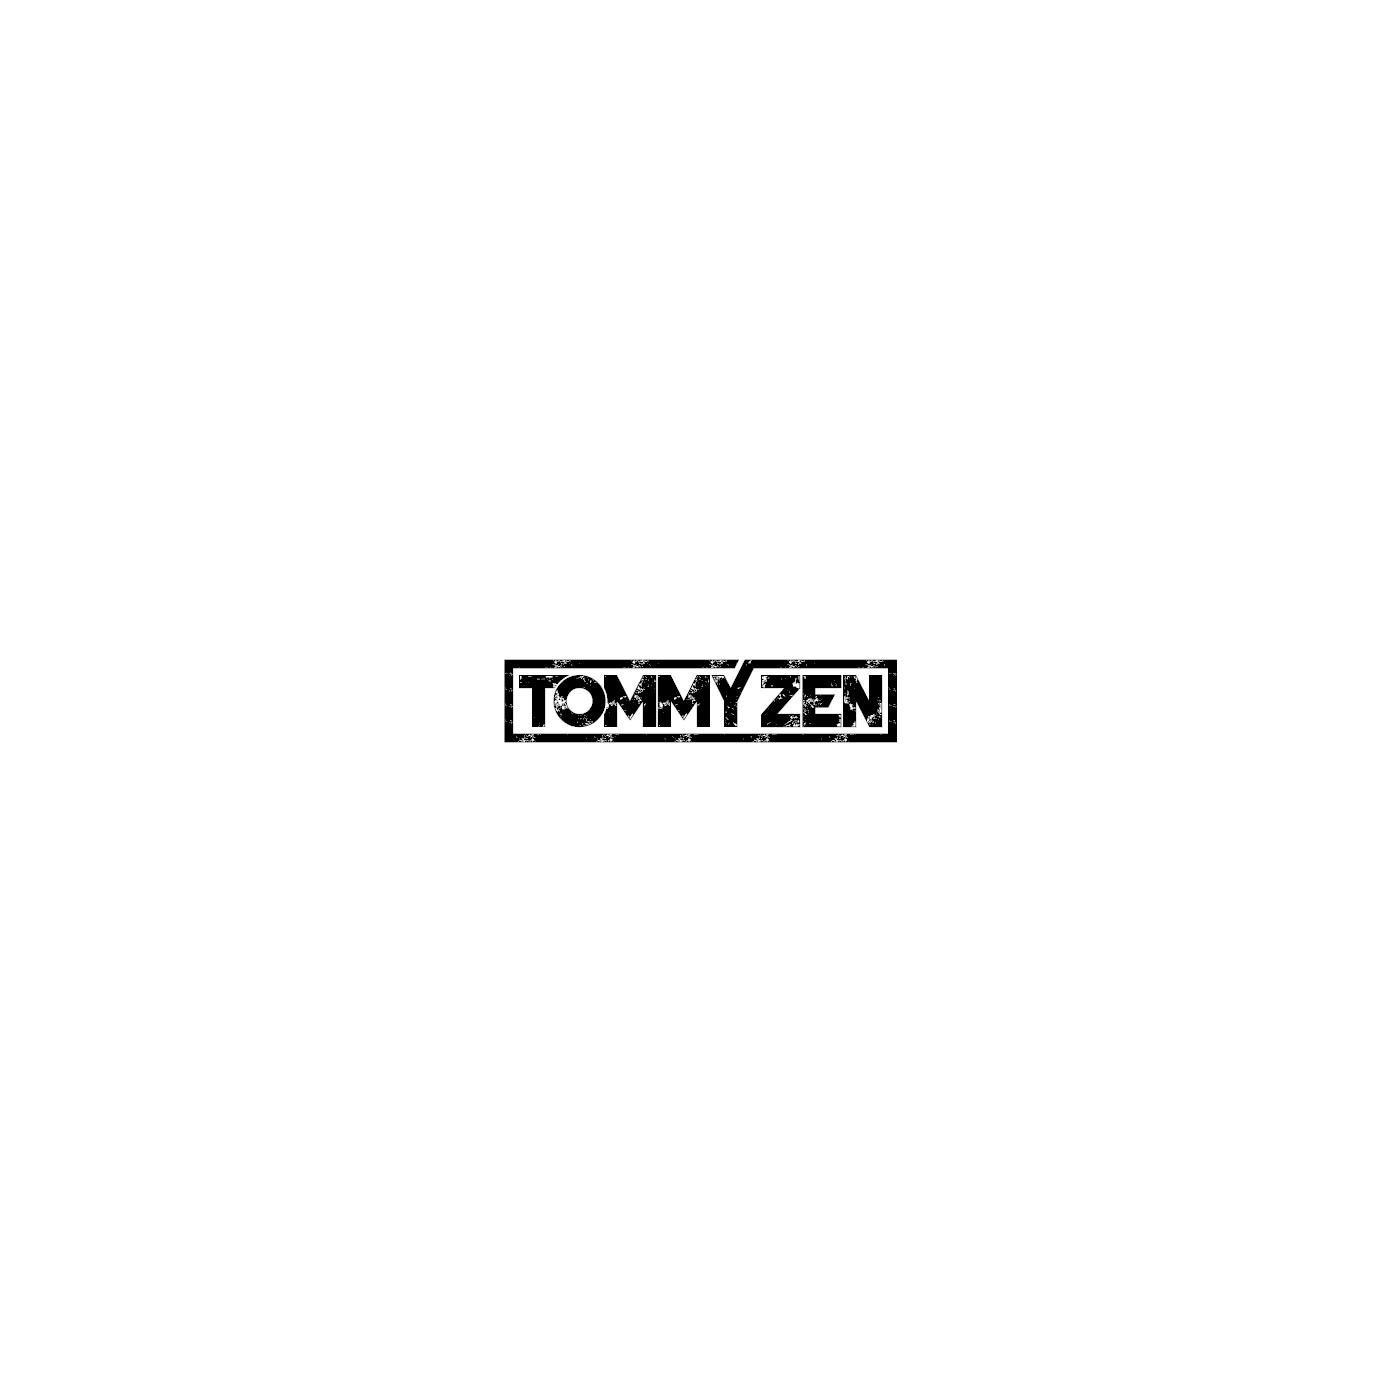 Tommy Zen